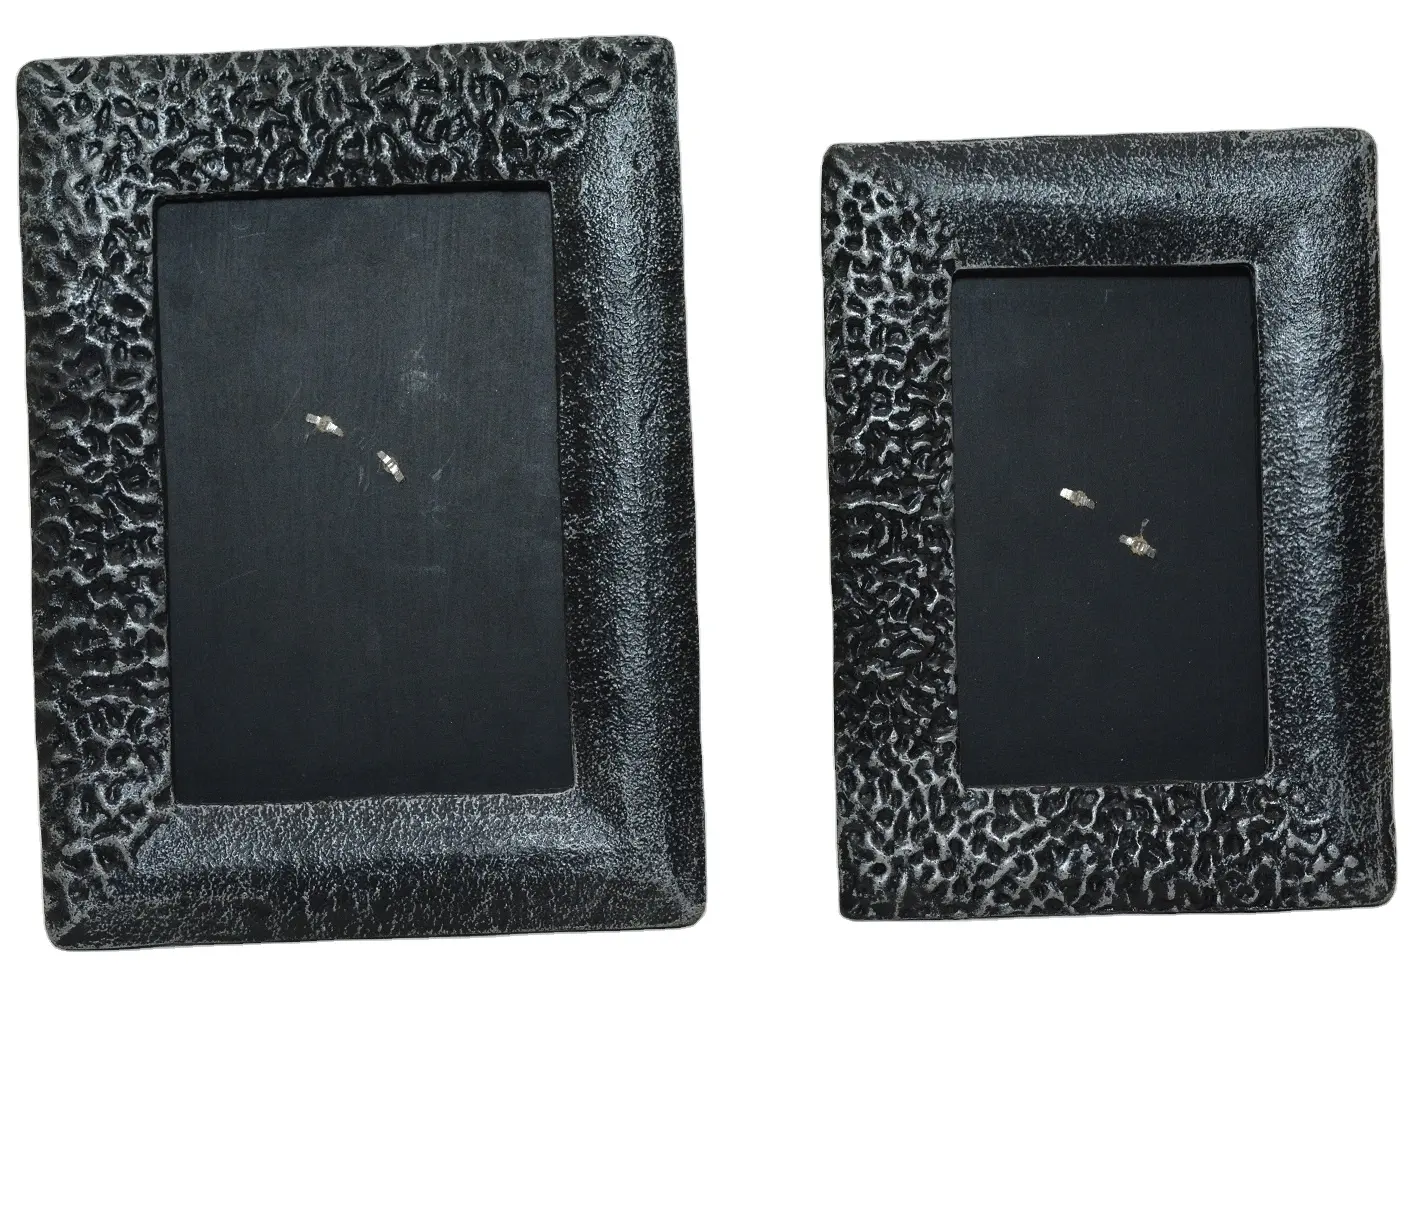 Moldura para fotos em metal com bordas de alumínio para colher contas de cor preta mais vendidas, moldura decorativa de metal do atacadista indiano